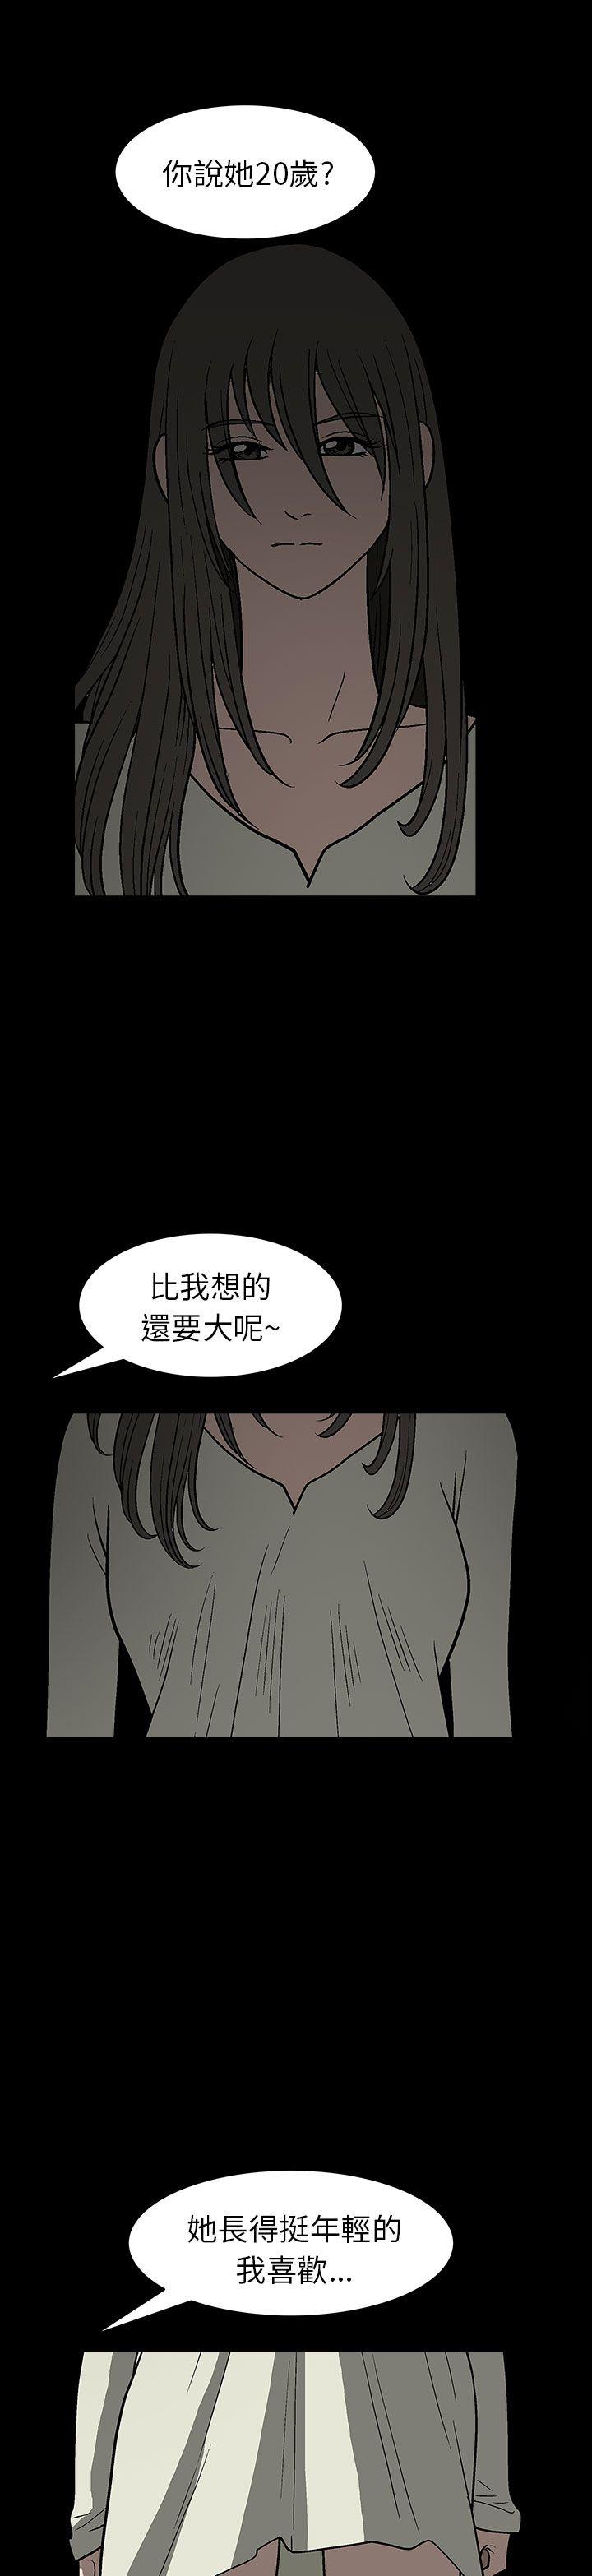 韩国污漫画 煦娜 第2话 20